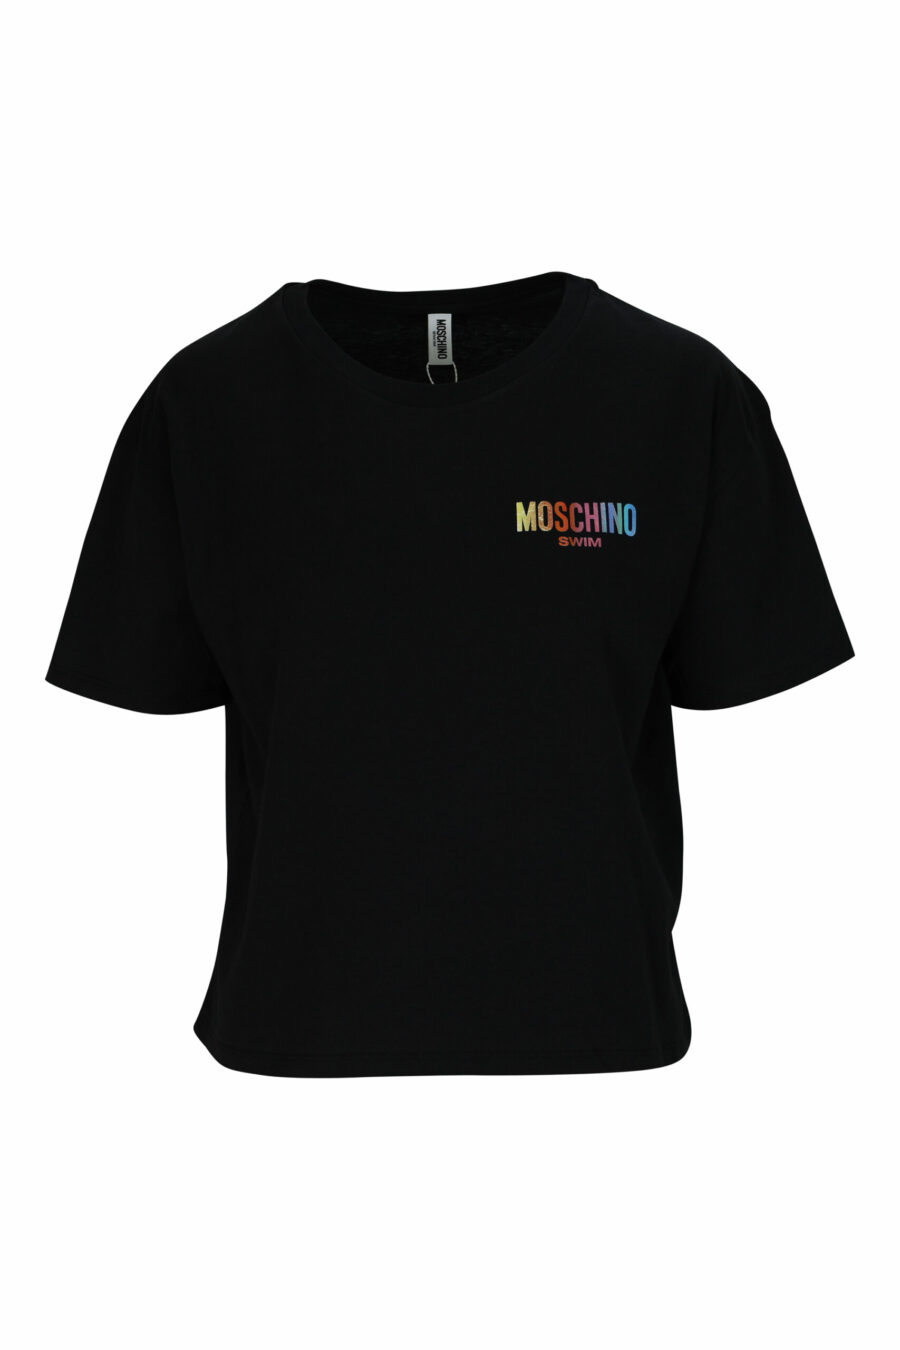 Camiseta negra "oversize" con minilogo multicolor - 667113355894 scaled